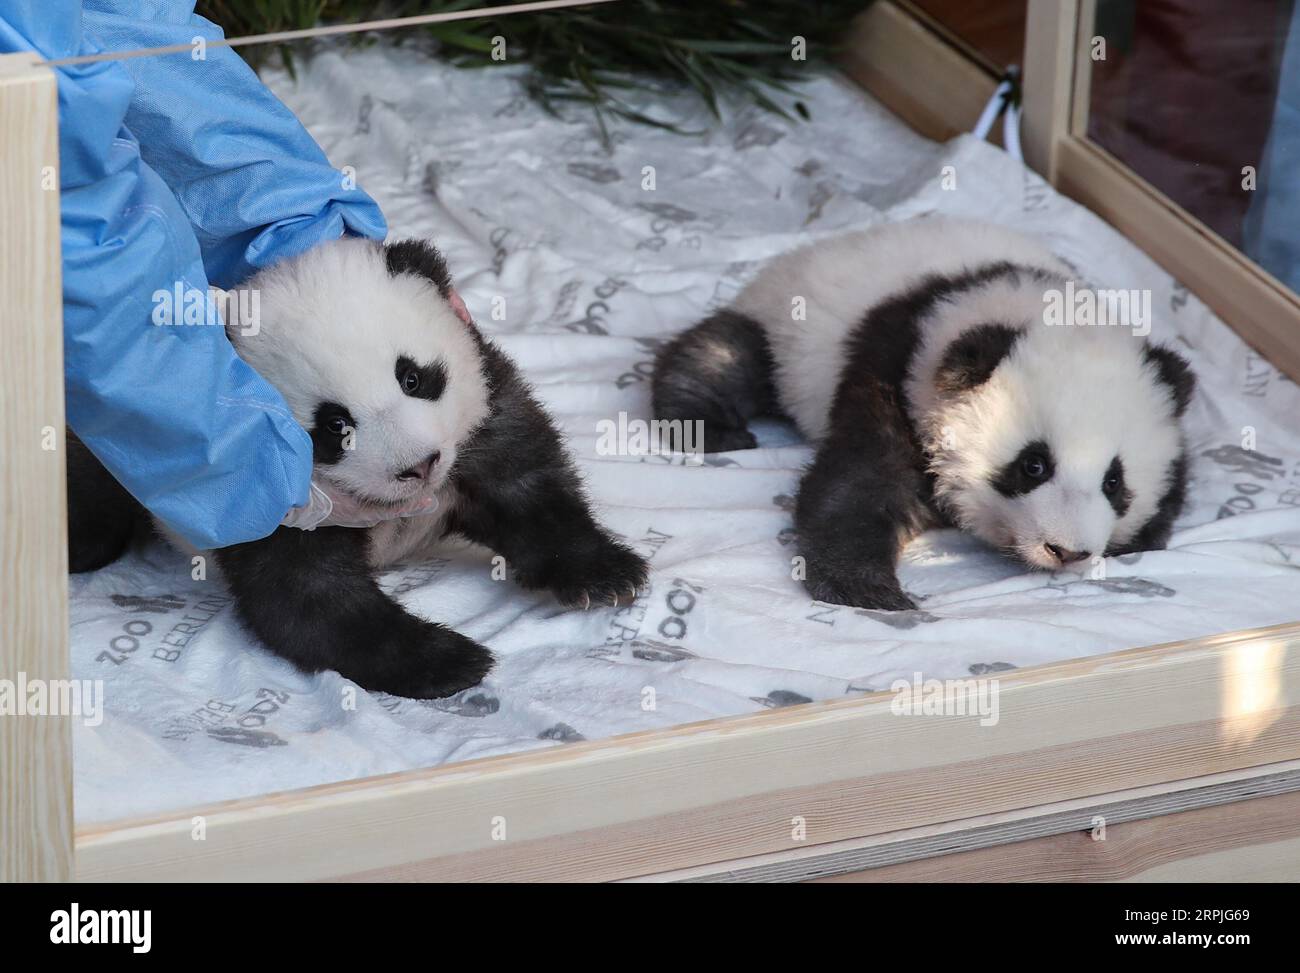 191209 -- BERLIN, 9. Dezember 2019 -- die Zwillingspandawelpen Meng Xiang R und Meng Yuan sind am 9. Dezember 2019 im Zoo Berlin zu sehen. Die Zwillingspandajungen, die im Zoo Berlin geboren wurden, die ersten Pandajungen, die in der Stadt geboren wurden, erhielten am Montag, 100 Tage nach ihrer Geburt, Namen. Bei einer Pressekonferenz im Zoo, bei der die beiden Jungen die Presse trafen, wurden die Zwillinge Meng Xiang , Meng Yuan genannt, beide zusammen, was bedeutet, dass schöne Träume wahr werden. DEUTSCHLAND-BERLIN-TWIN PANDA NEUGEBORENE-NAMEN SHANXYUQI PUBLICATIONXNOTXINXCHN Stockfoto